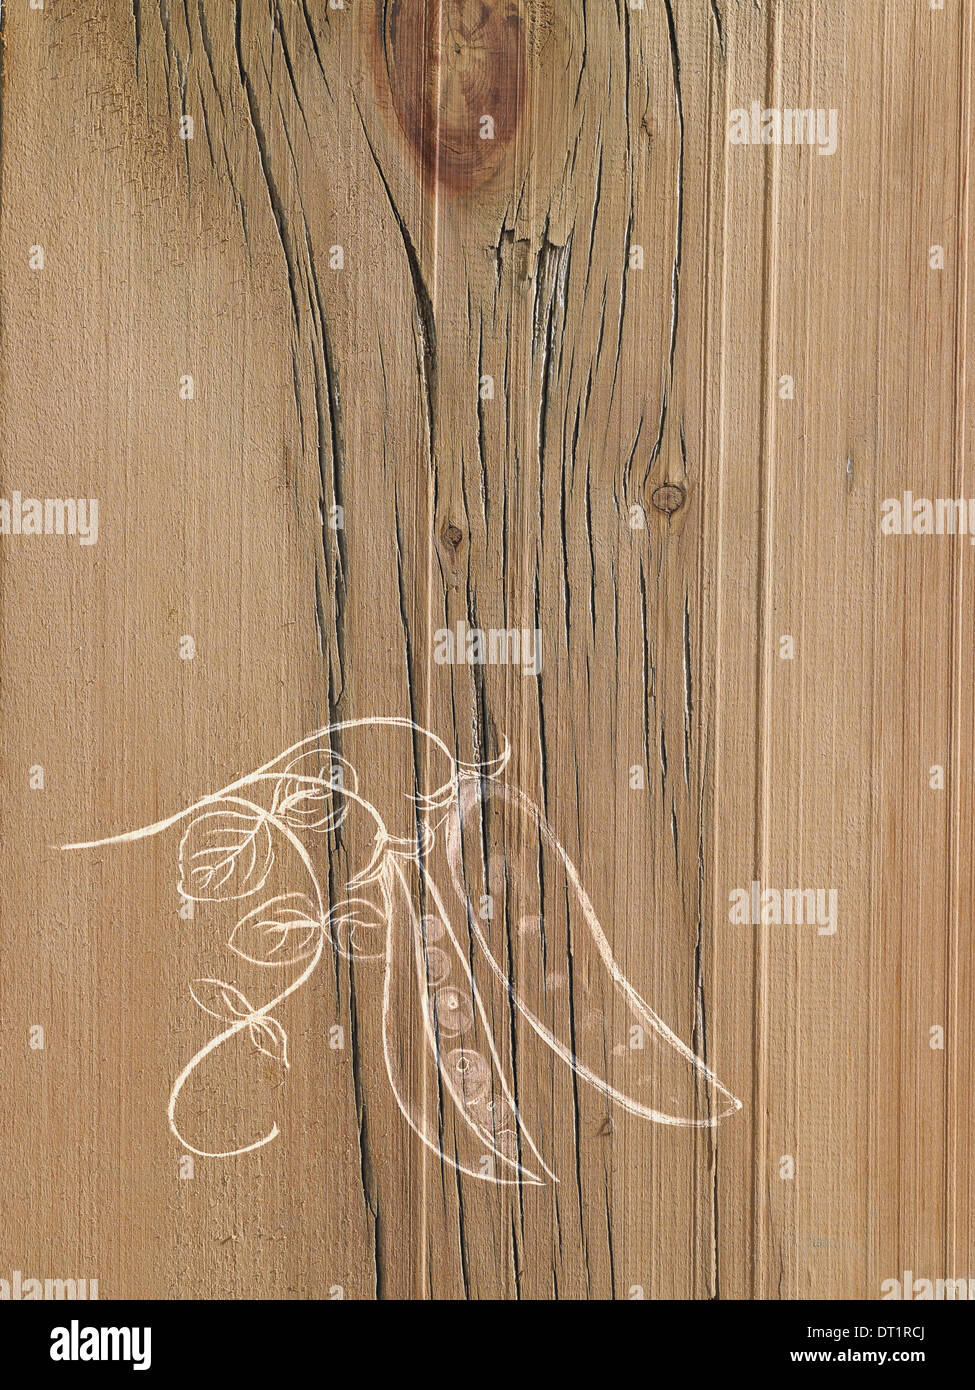 Un dessin d'image sur un fond de grain de bois naturel pois frais dans une cosse sur la vigne Banque D'Images